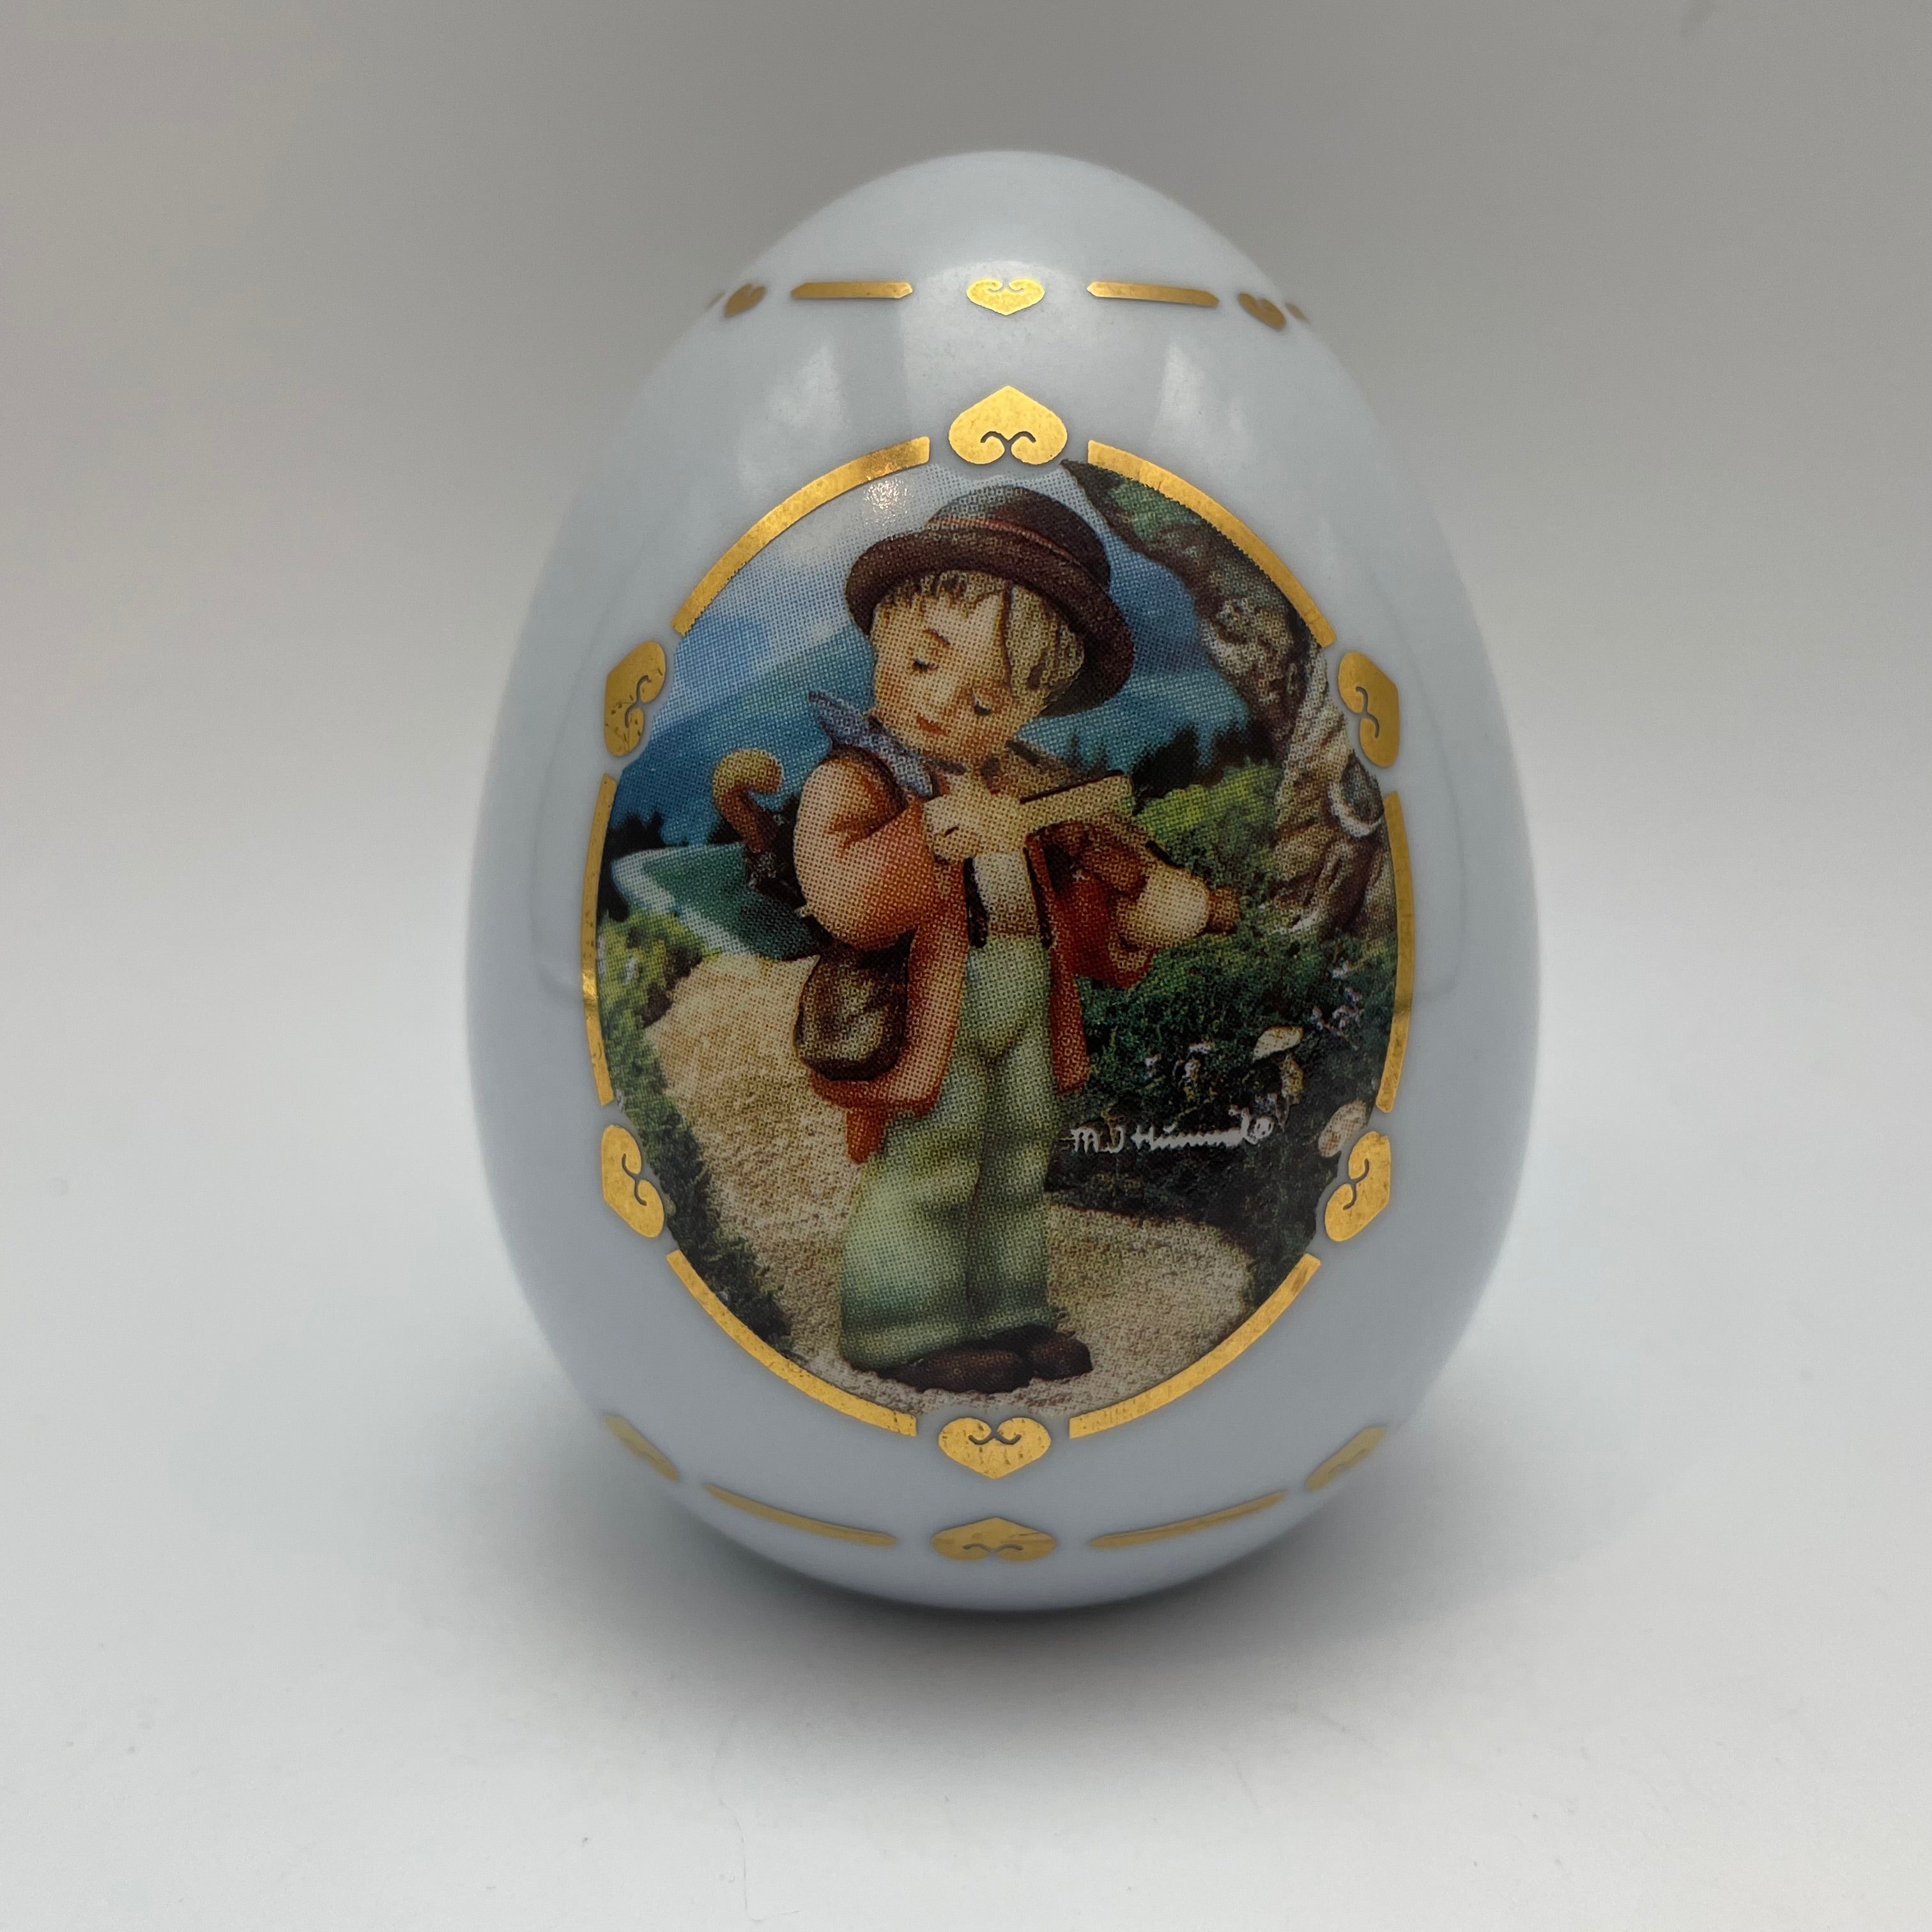 M.J. Hummel Porcelain Egg 